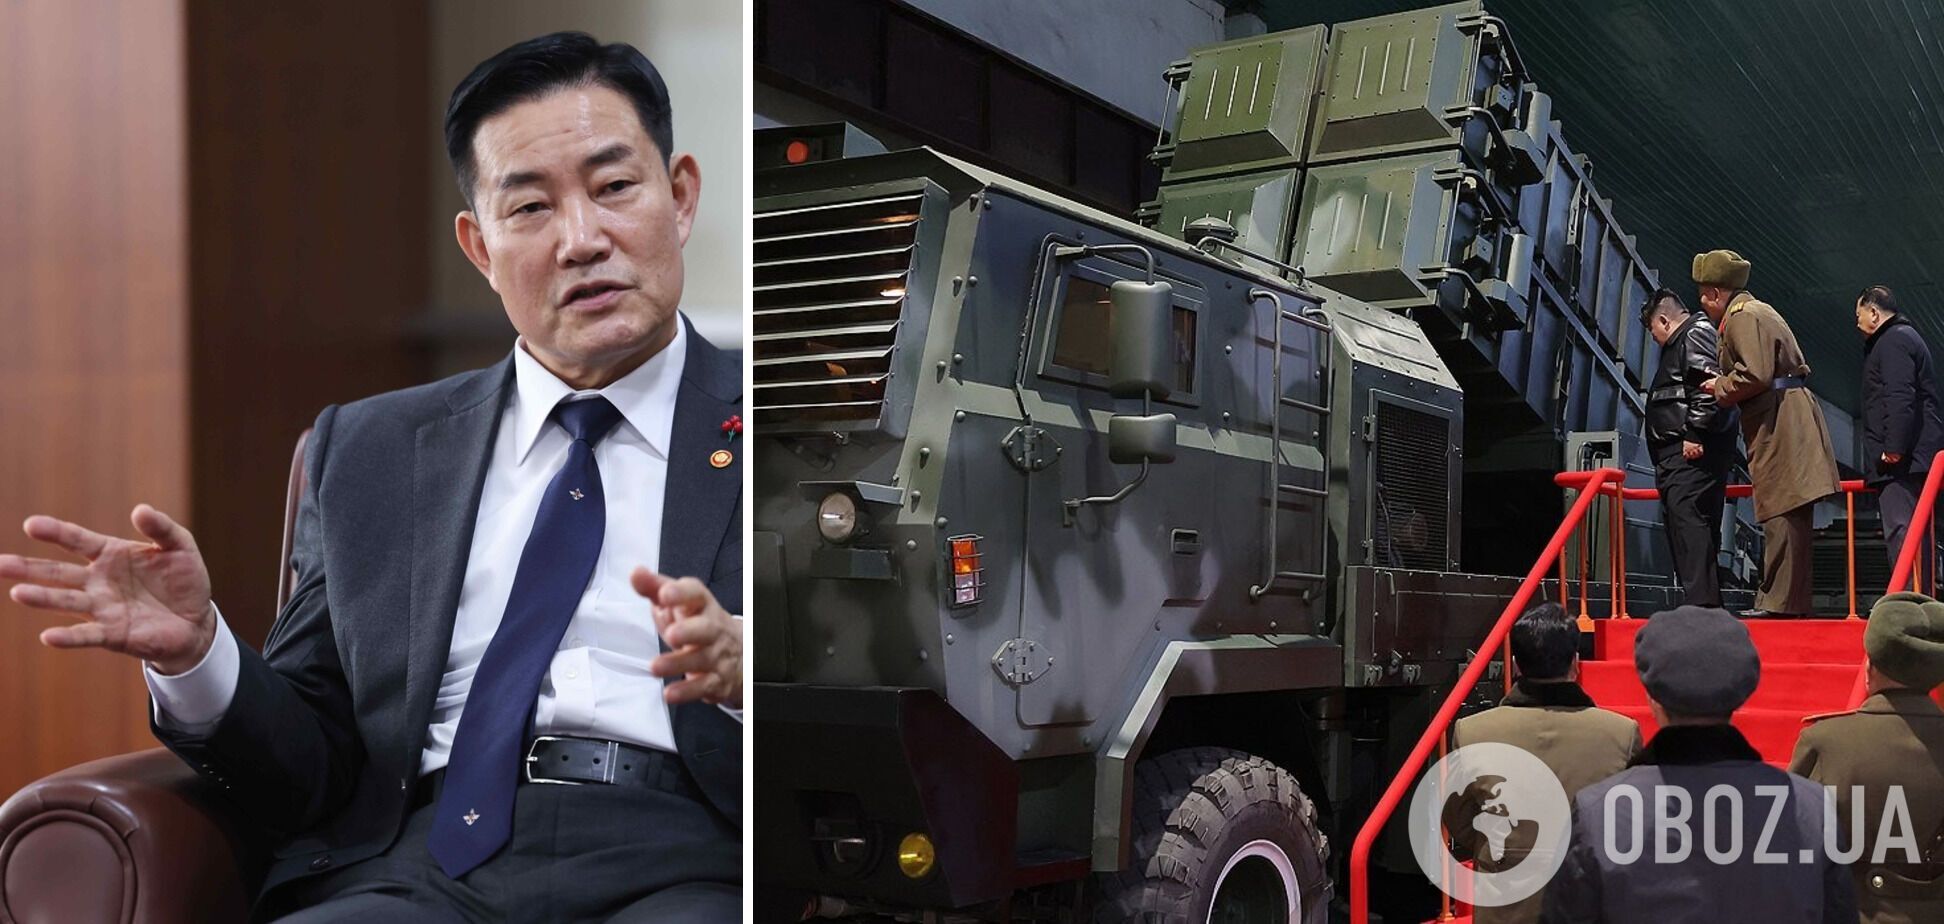 КНДР может продать России новый тип баллистических ракет: в Южной Корее предупредили об опасности